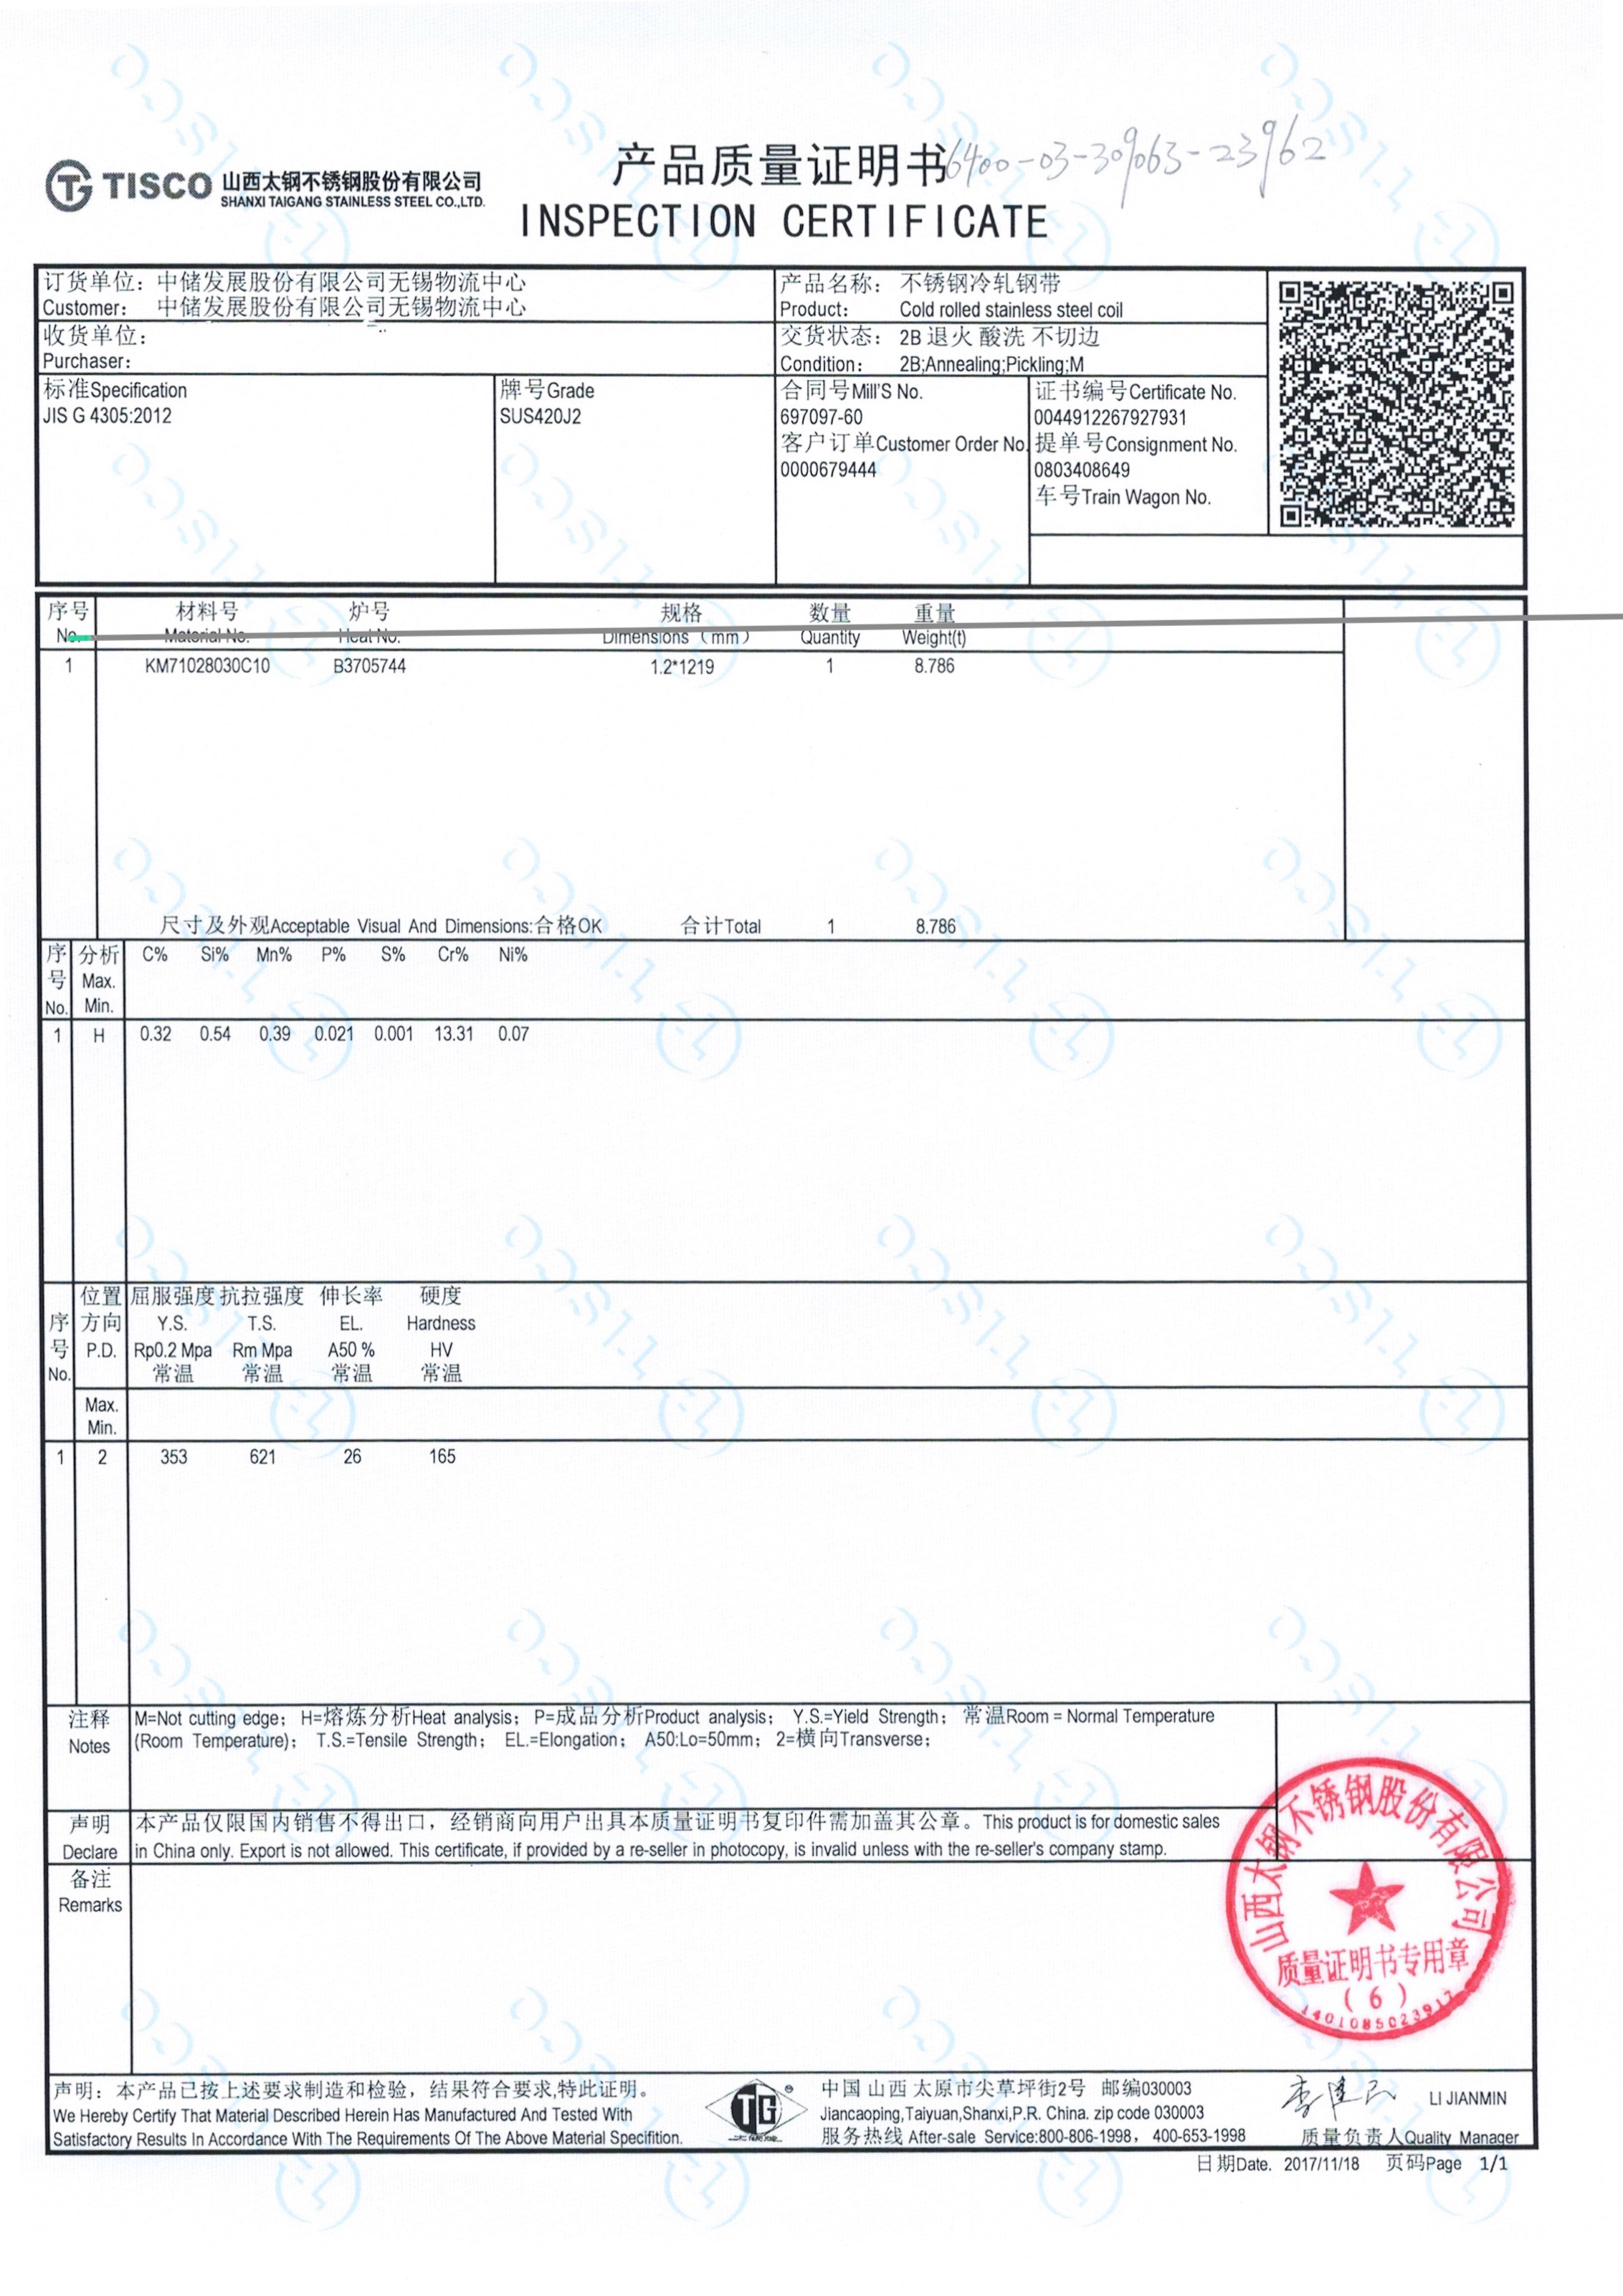 420j2 certificate from tisco.jpg